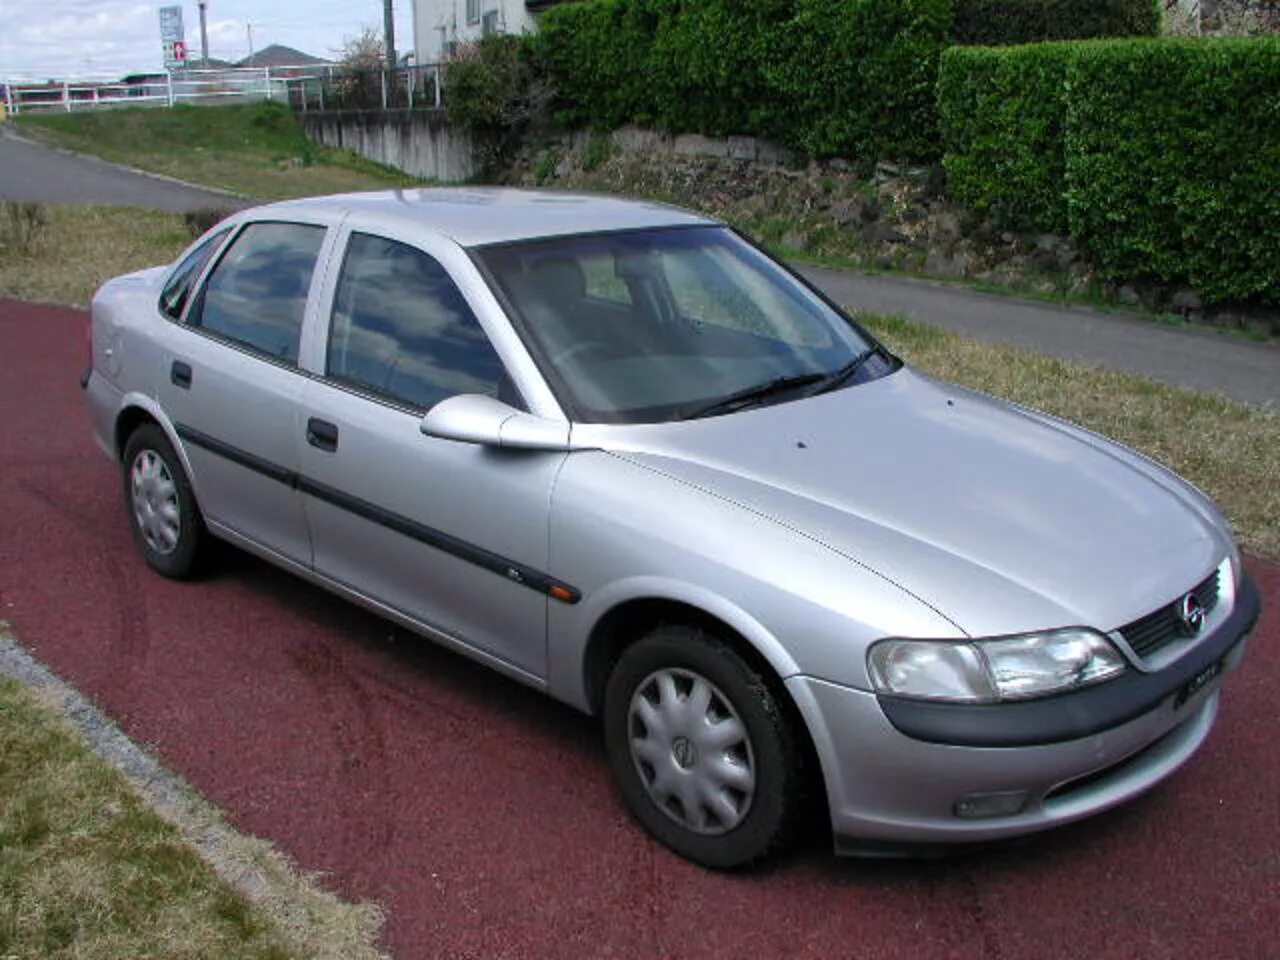 Вектра б 97 год. Opel Vectra 1997. Опель Вектра 1997. Опель Вектра 1997 седан. Опель Вектра 1997 года.